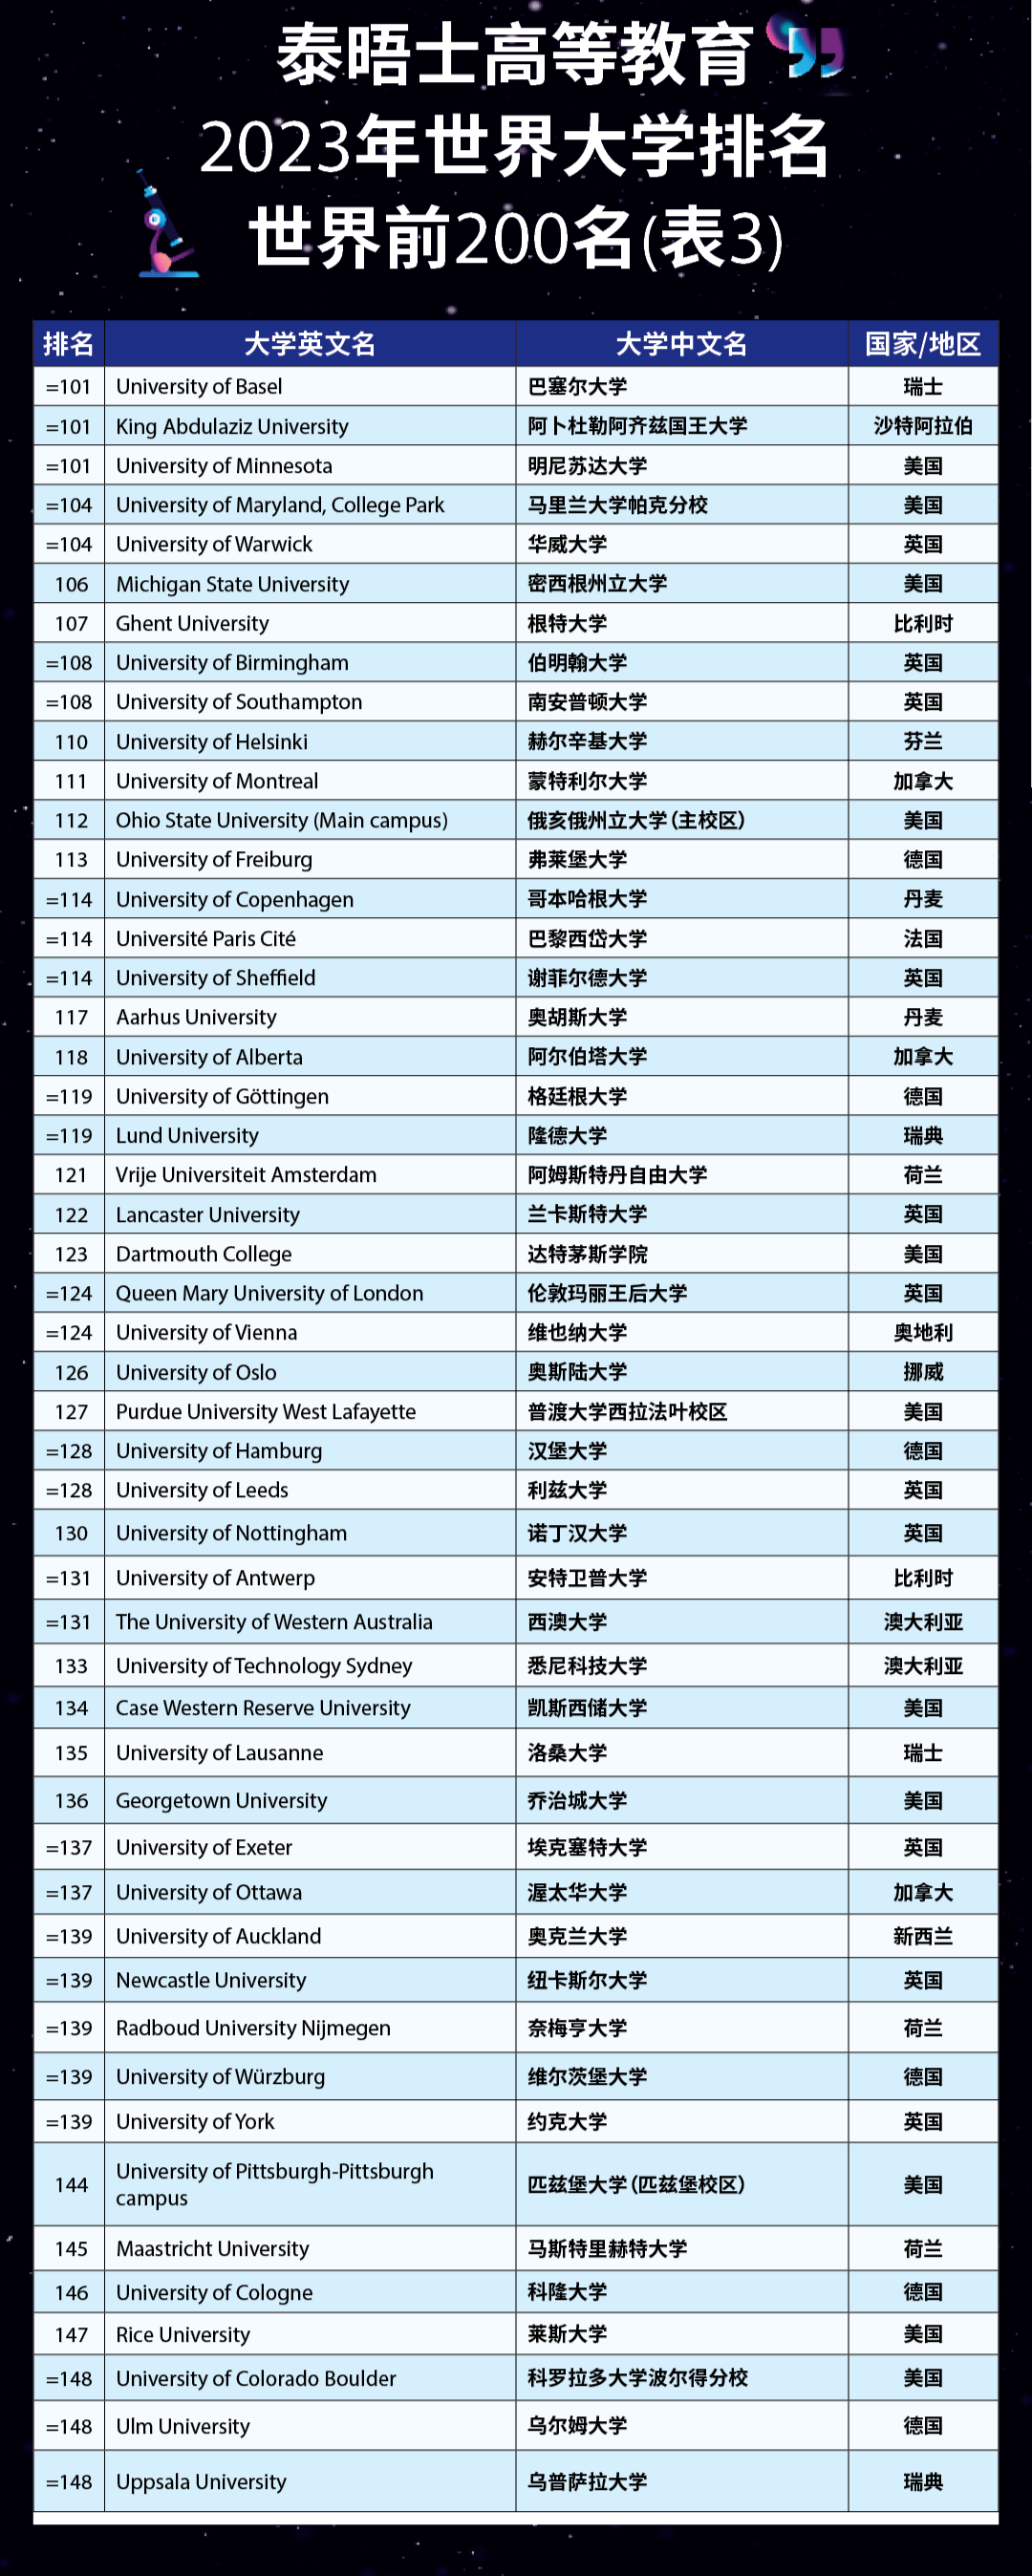 2023年泰晤士世界大学排名出炉!清华亚洲第一,南大首次跻身百强